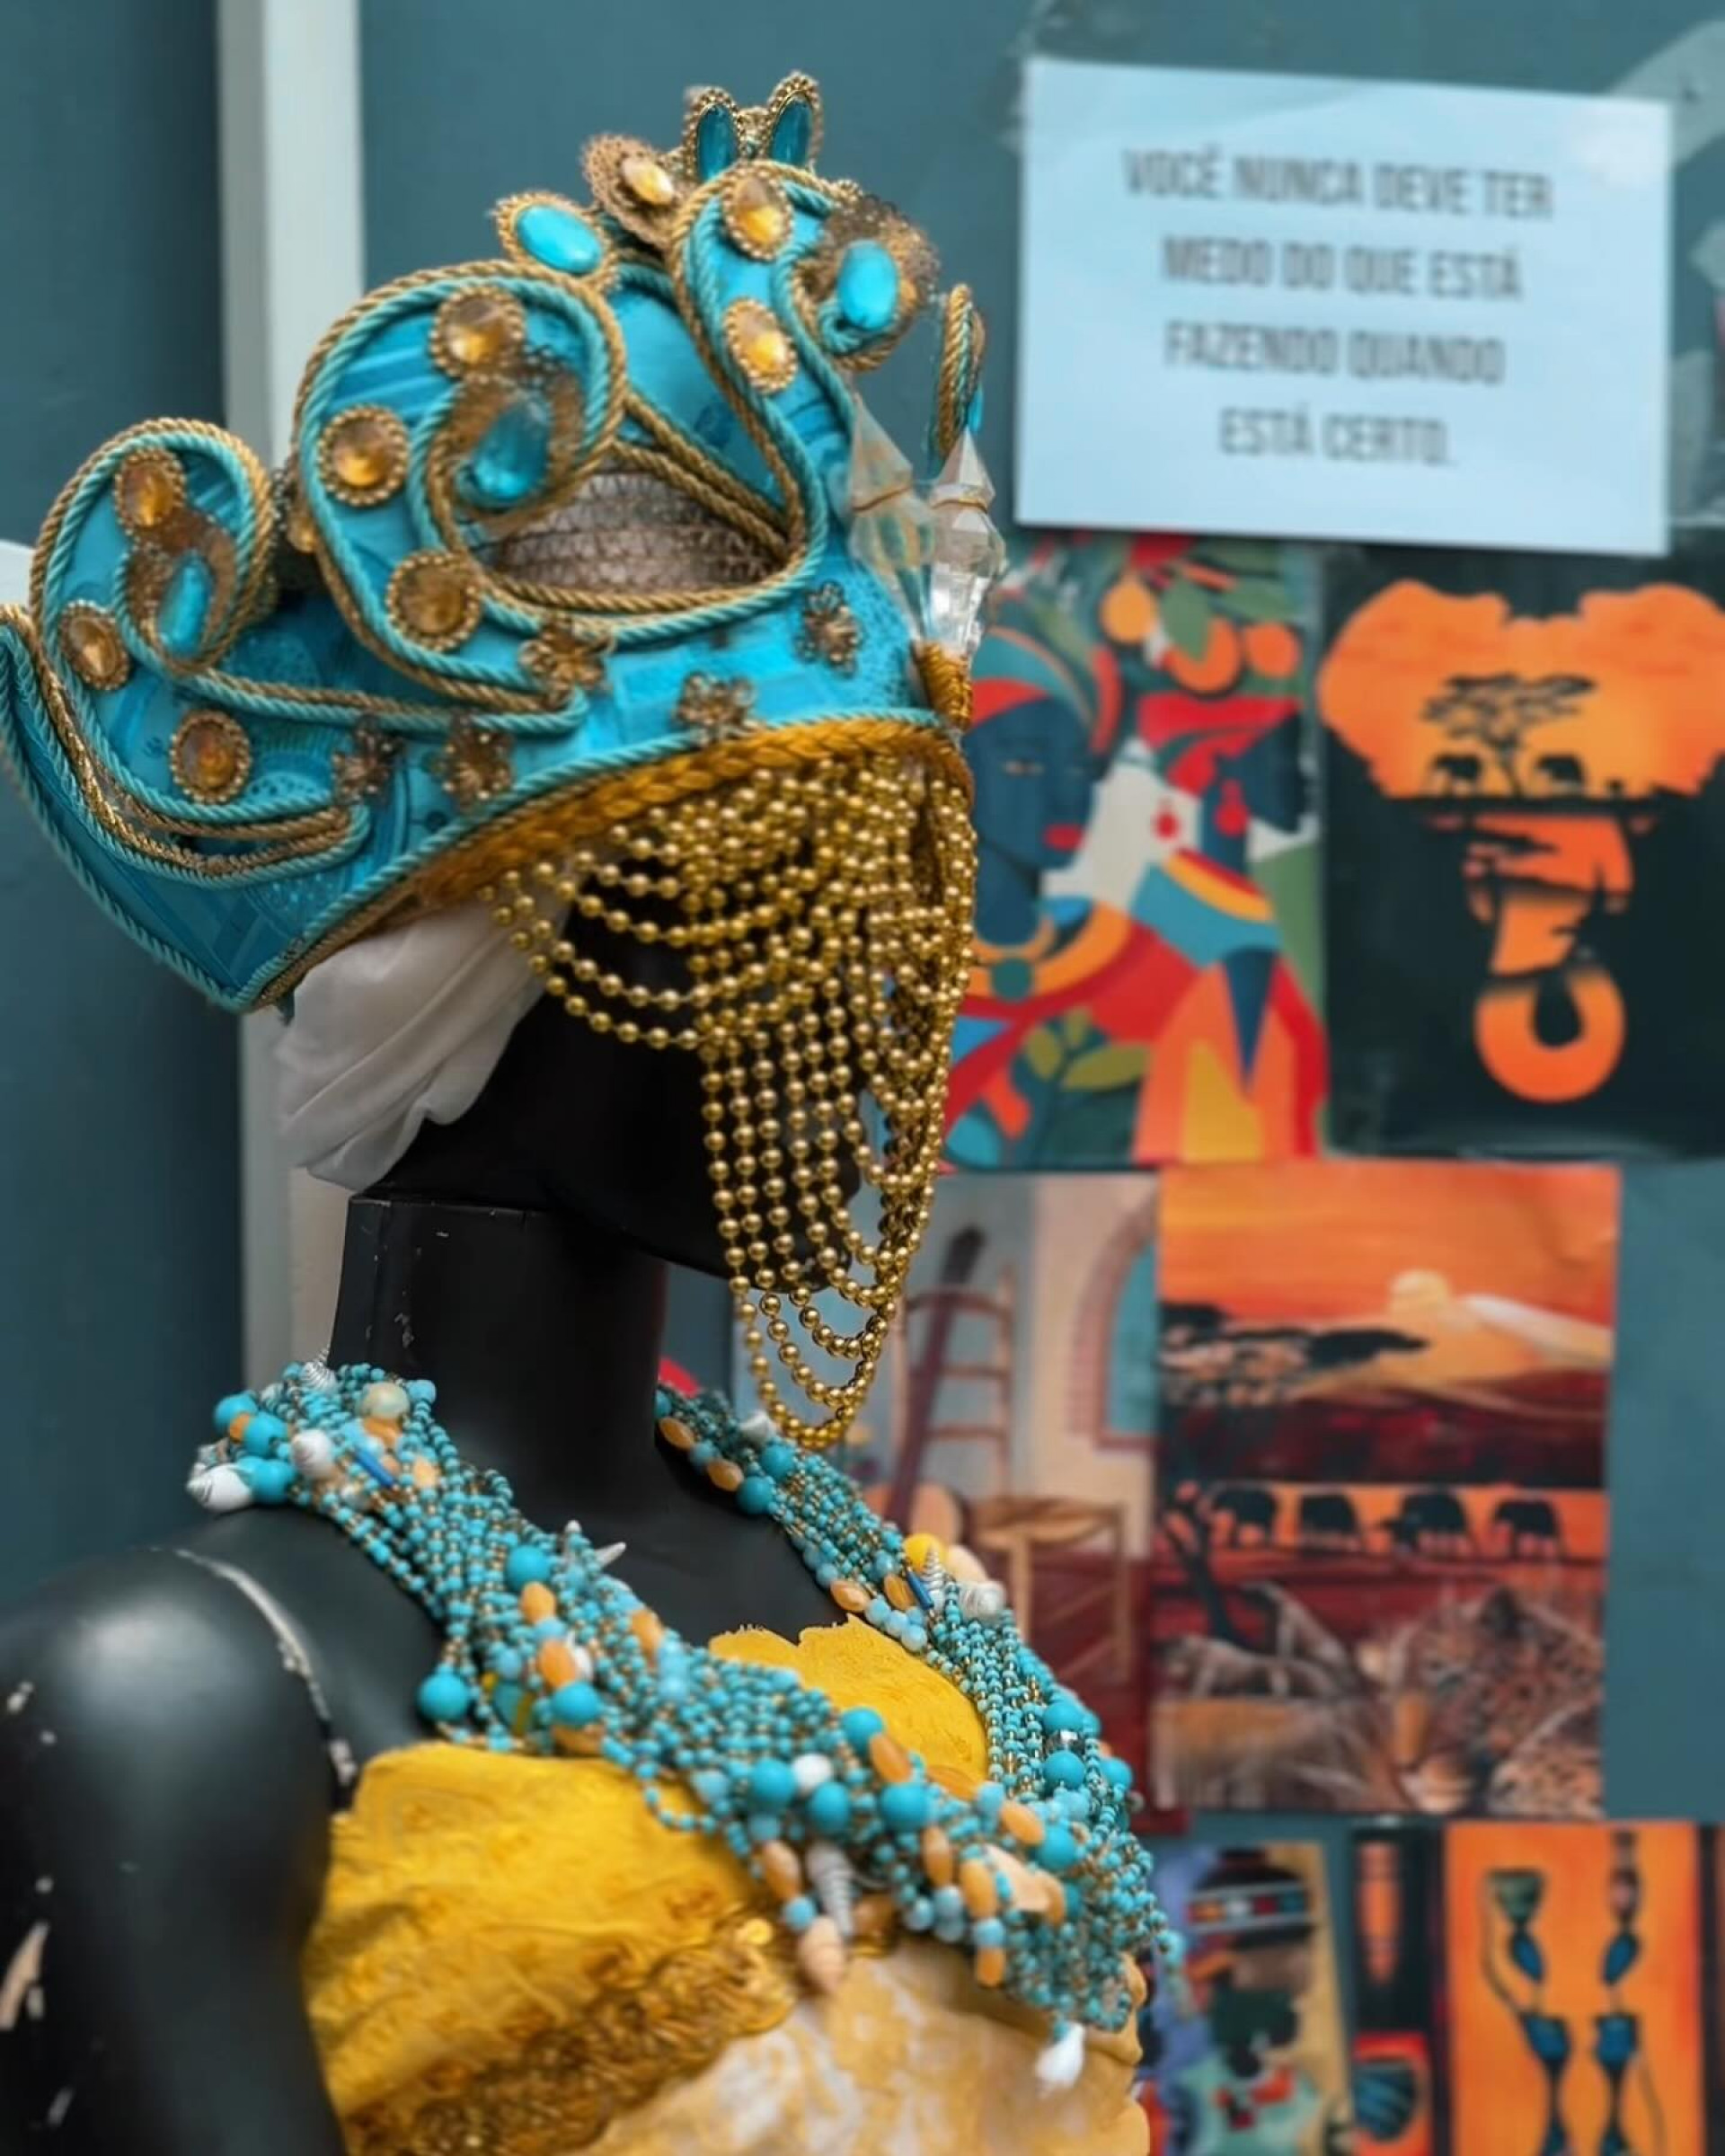 Arte africana na exposição do Dia da Consciência Negra - Divulgação / PMN